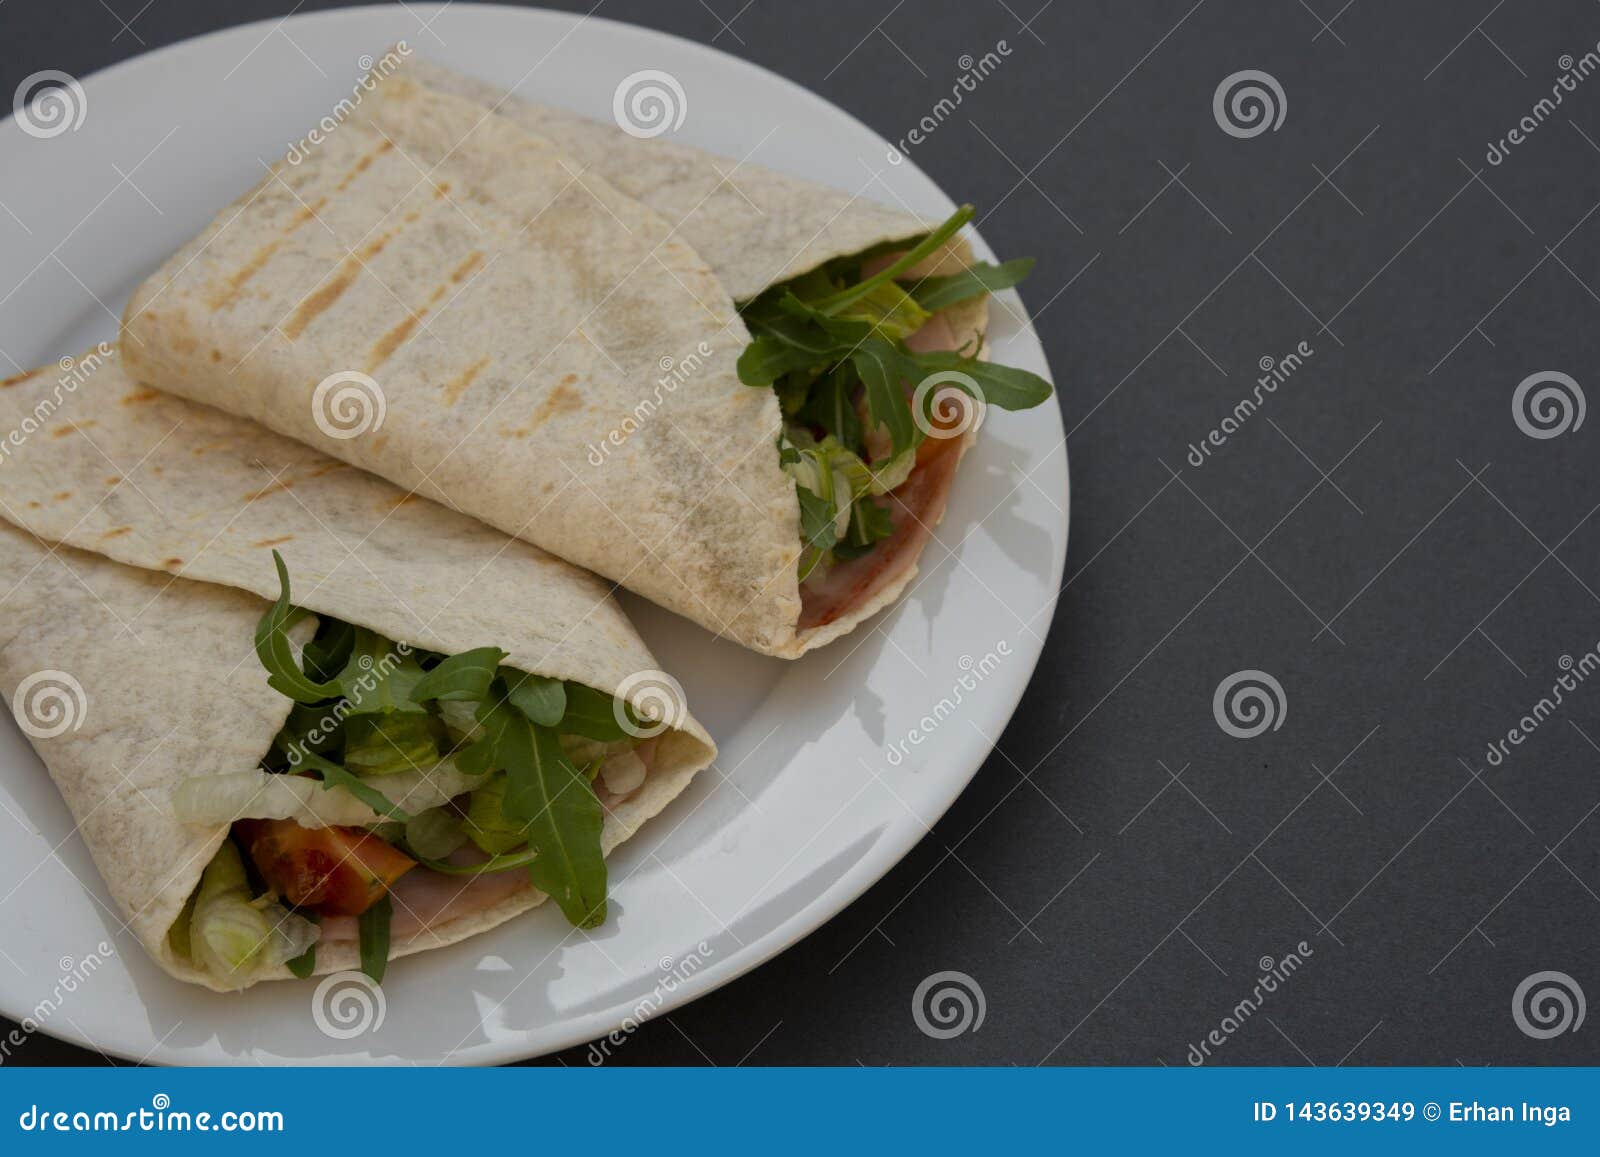 healthy avocado and vegetables burrito, wraps, rolles. healthy breakfast or snack. avocado sandwich. copy space